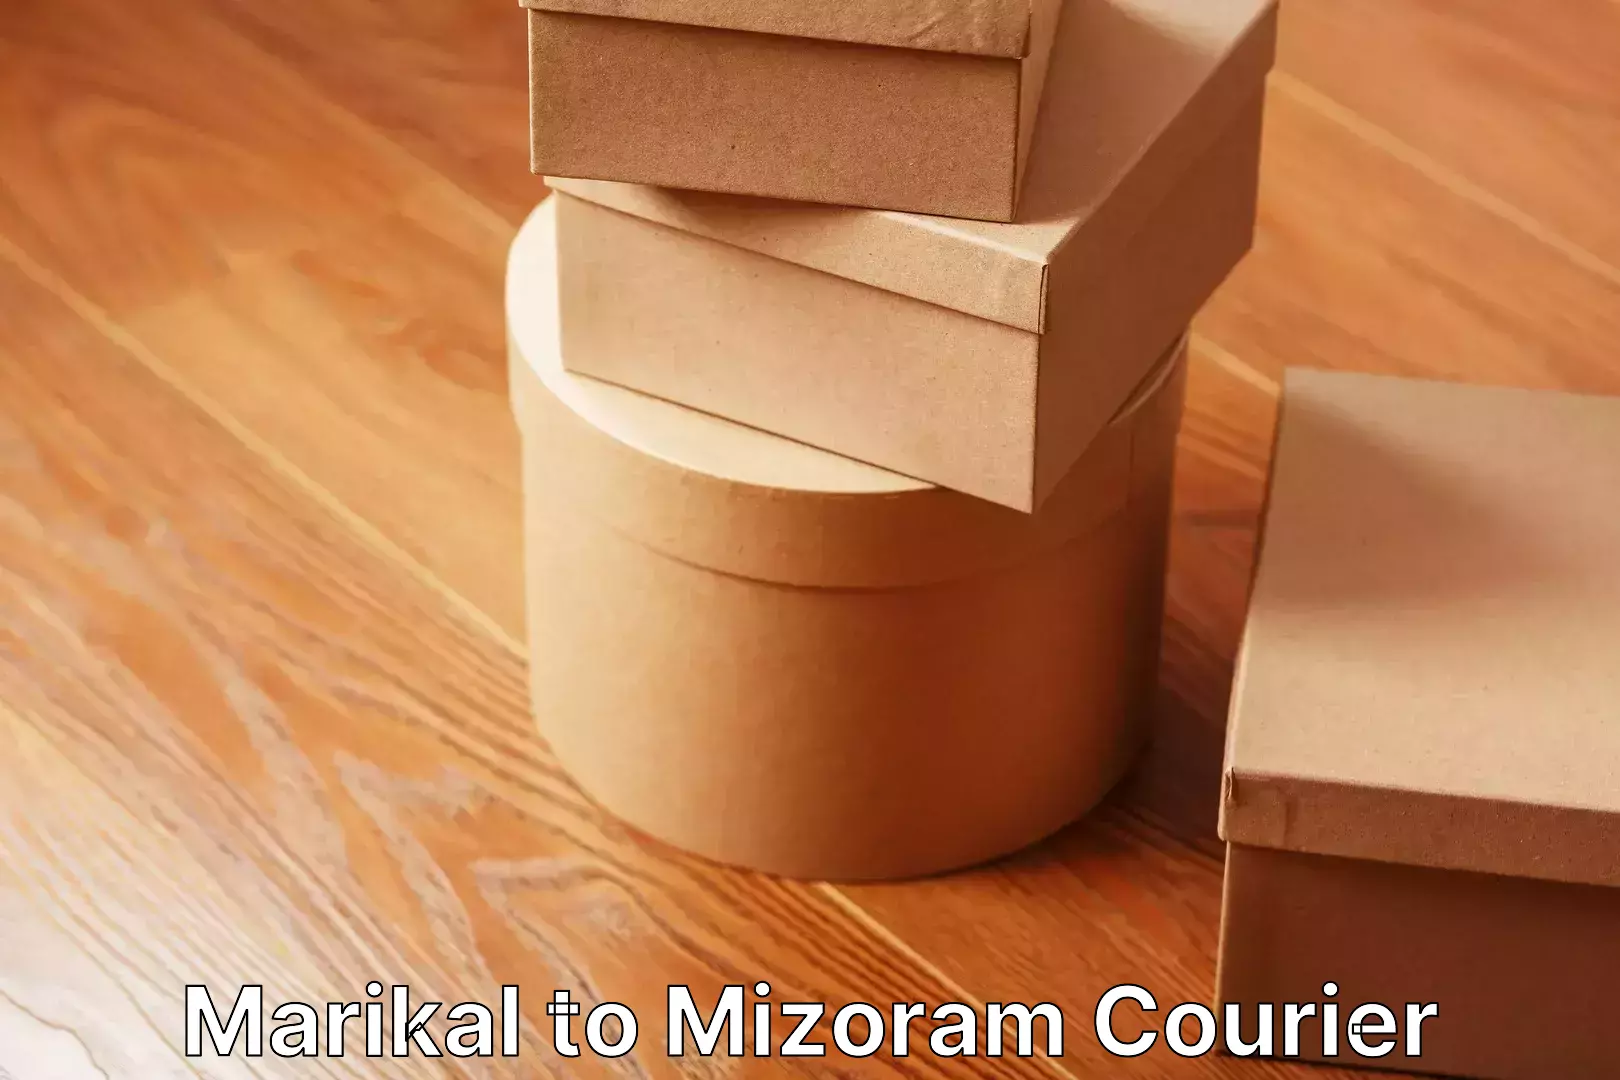 Expert goods movers Marikal to Mizoram